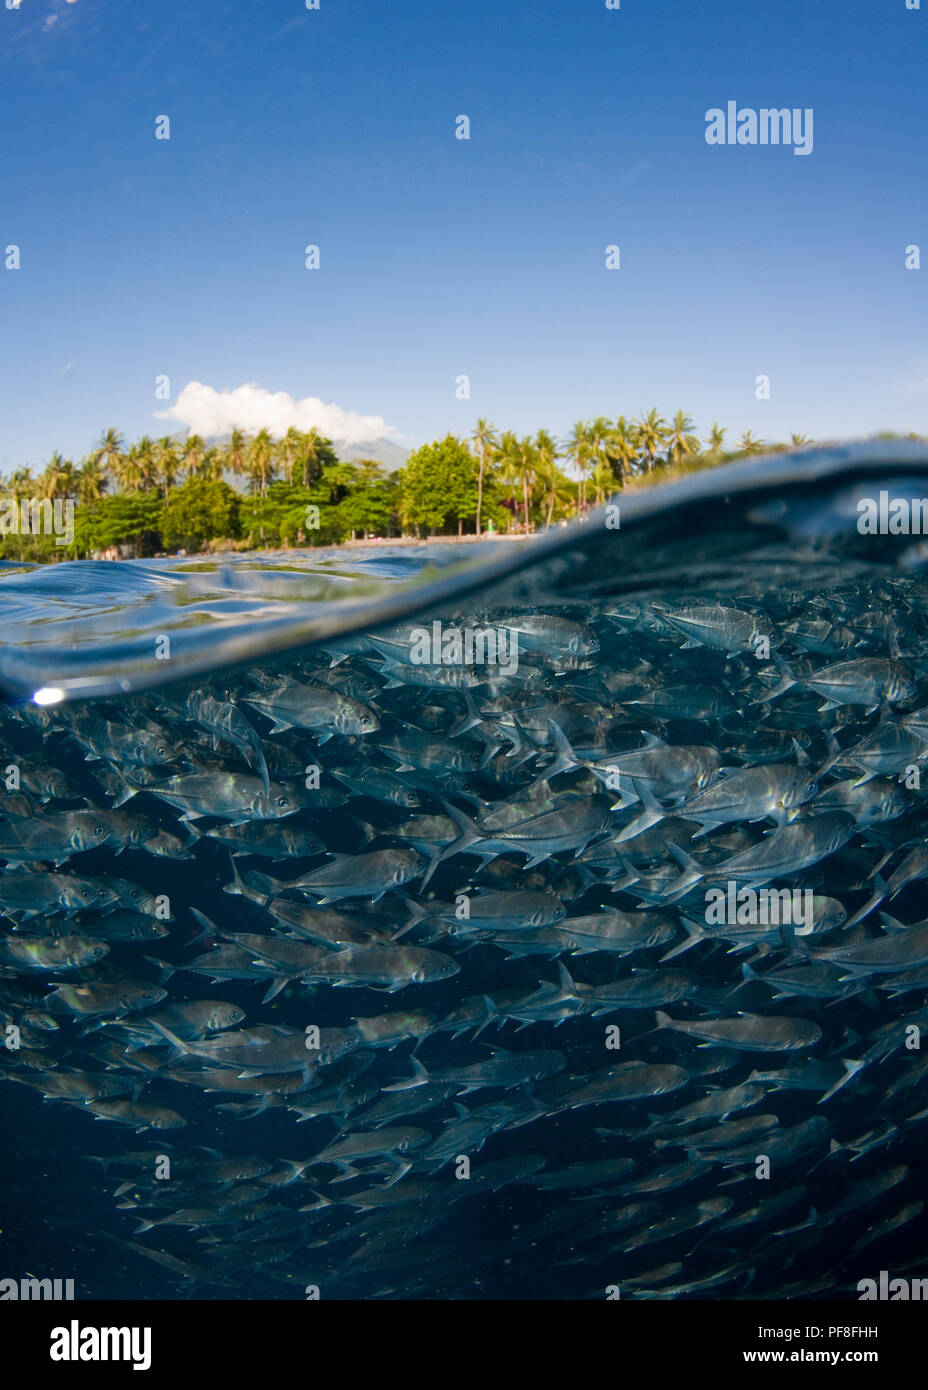 Split-level Foto einer Schule des Big-Eye Makrelen, Unterwasser, mit dem Ufer, Palmen, und blauer Himmel über Wasser. Tulamben, Bali, Indonesien. Stockfoto